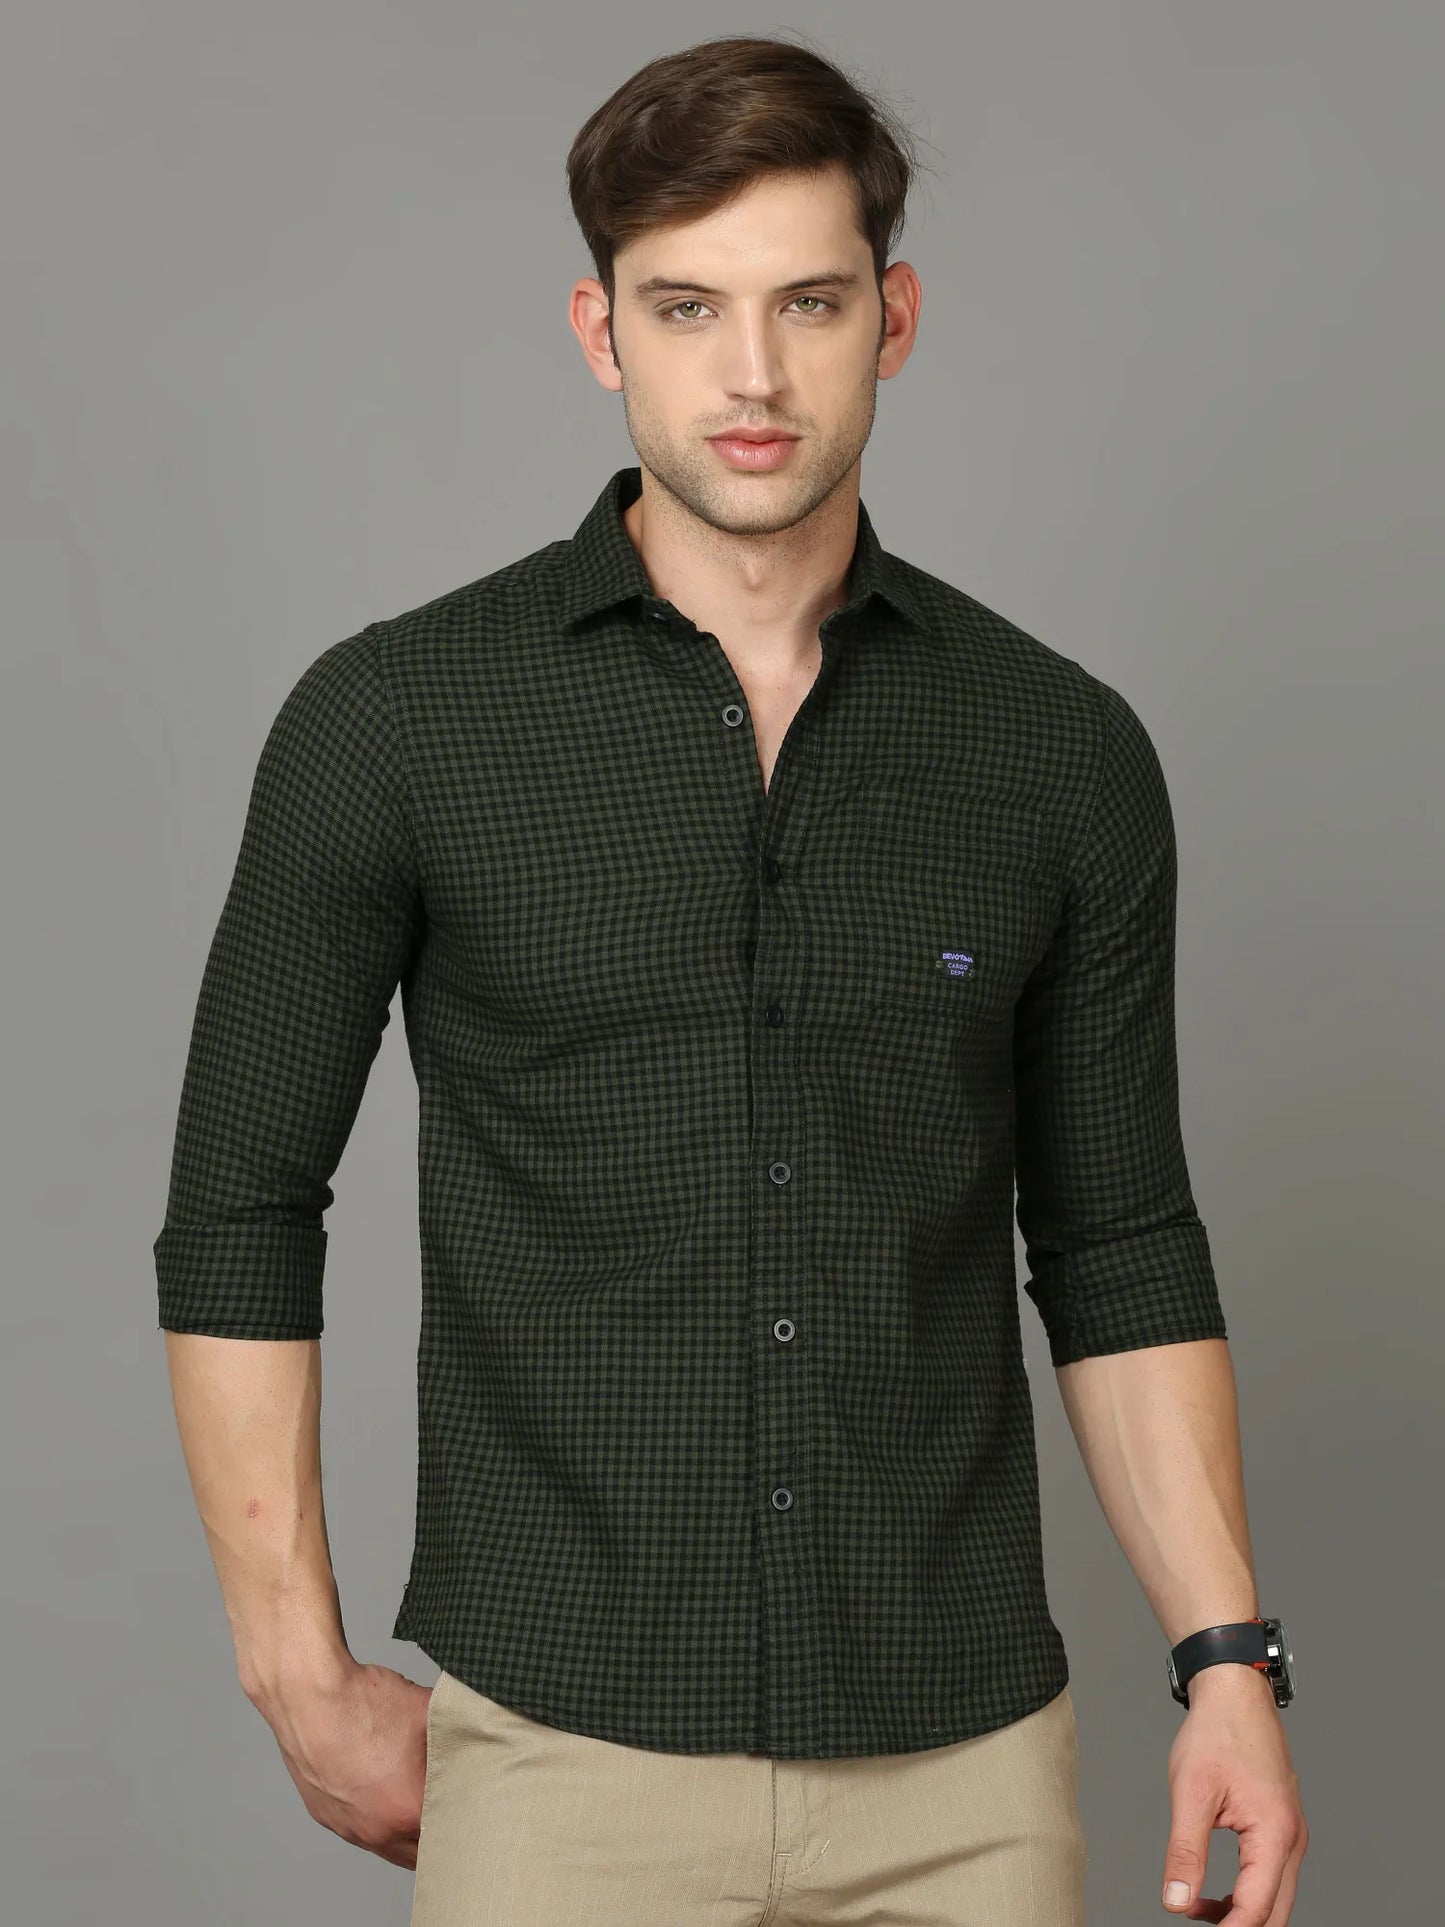 Bottle Green Checkered Shirt for Men 